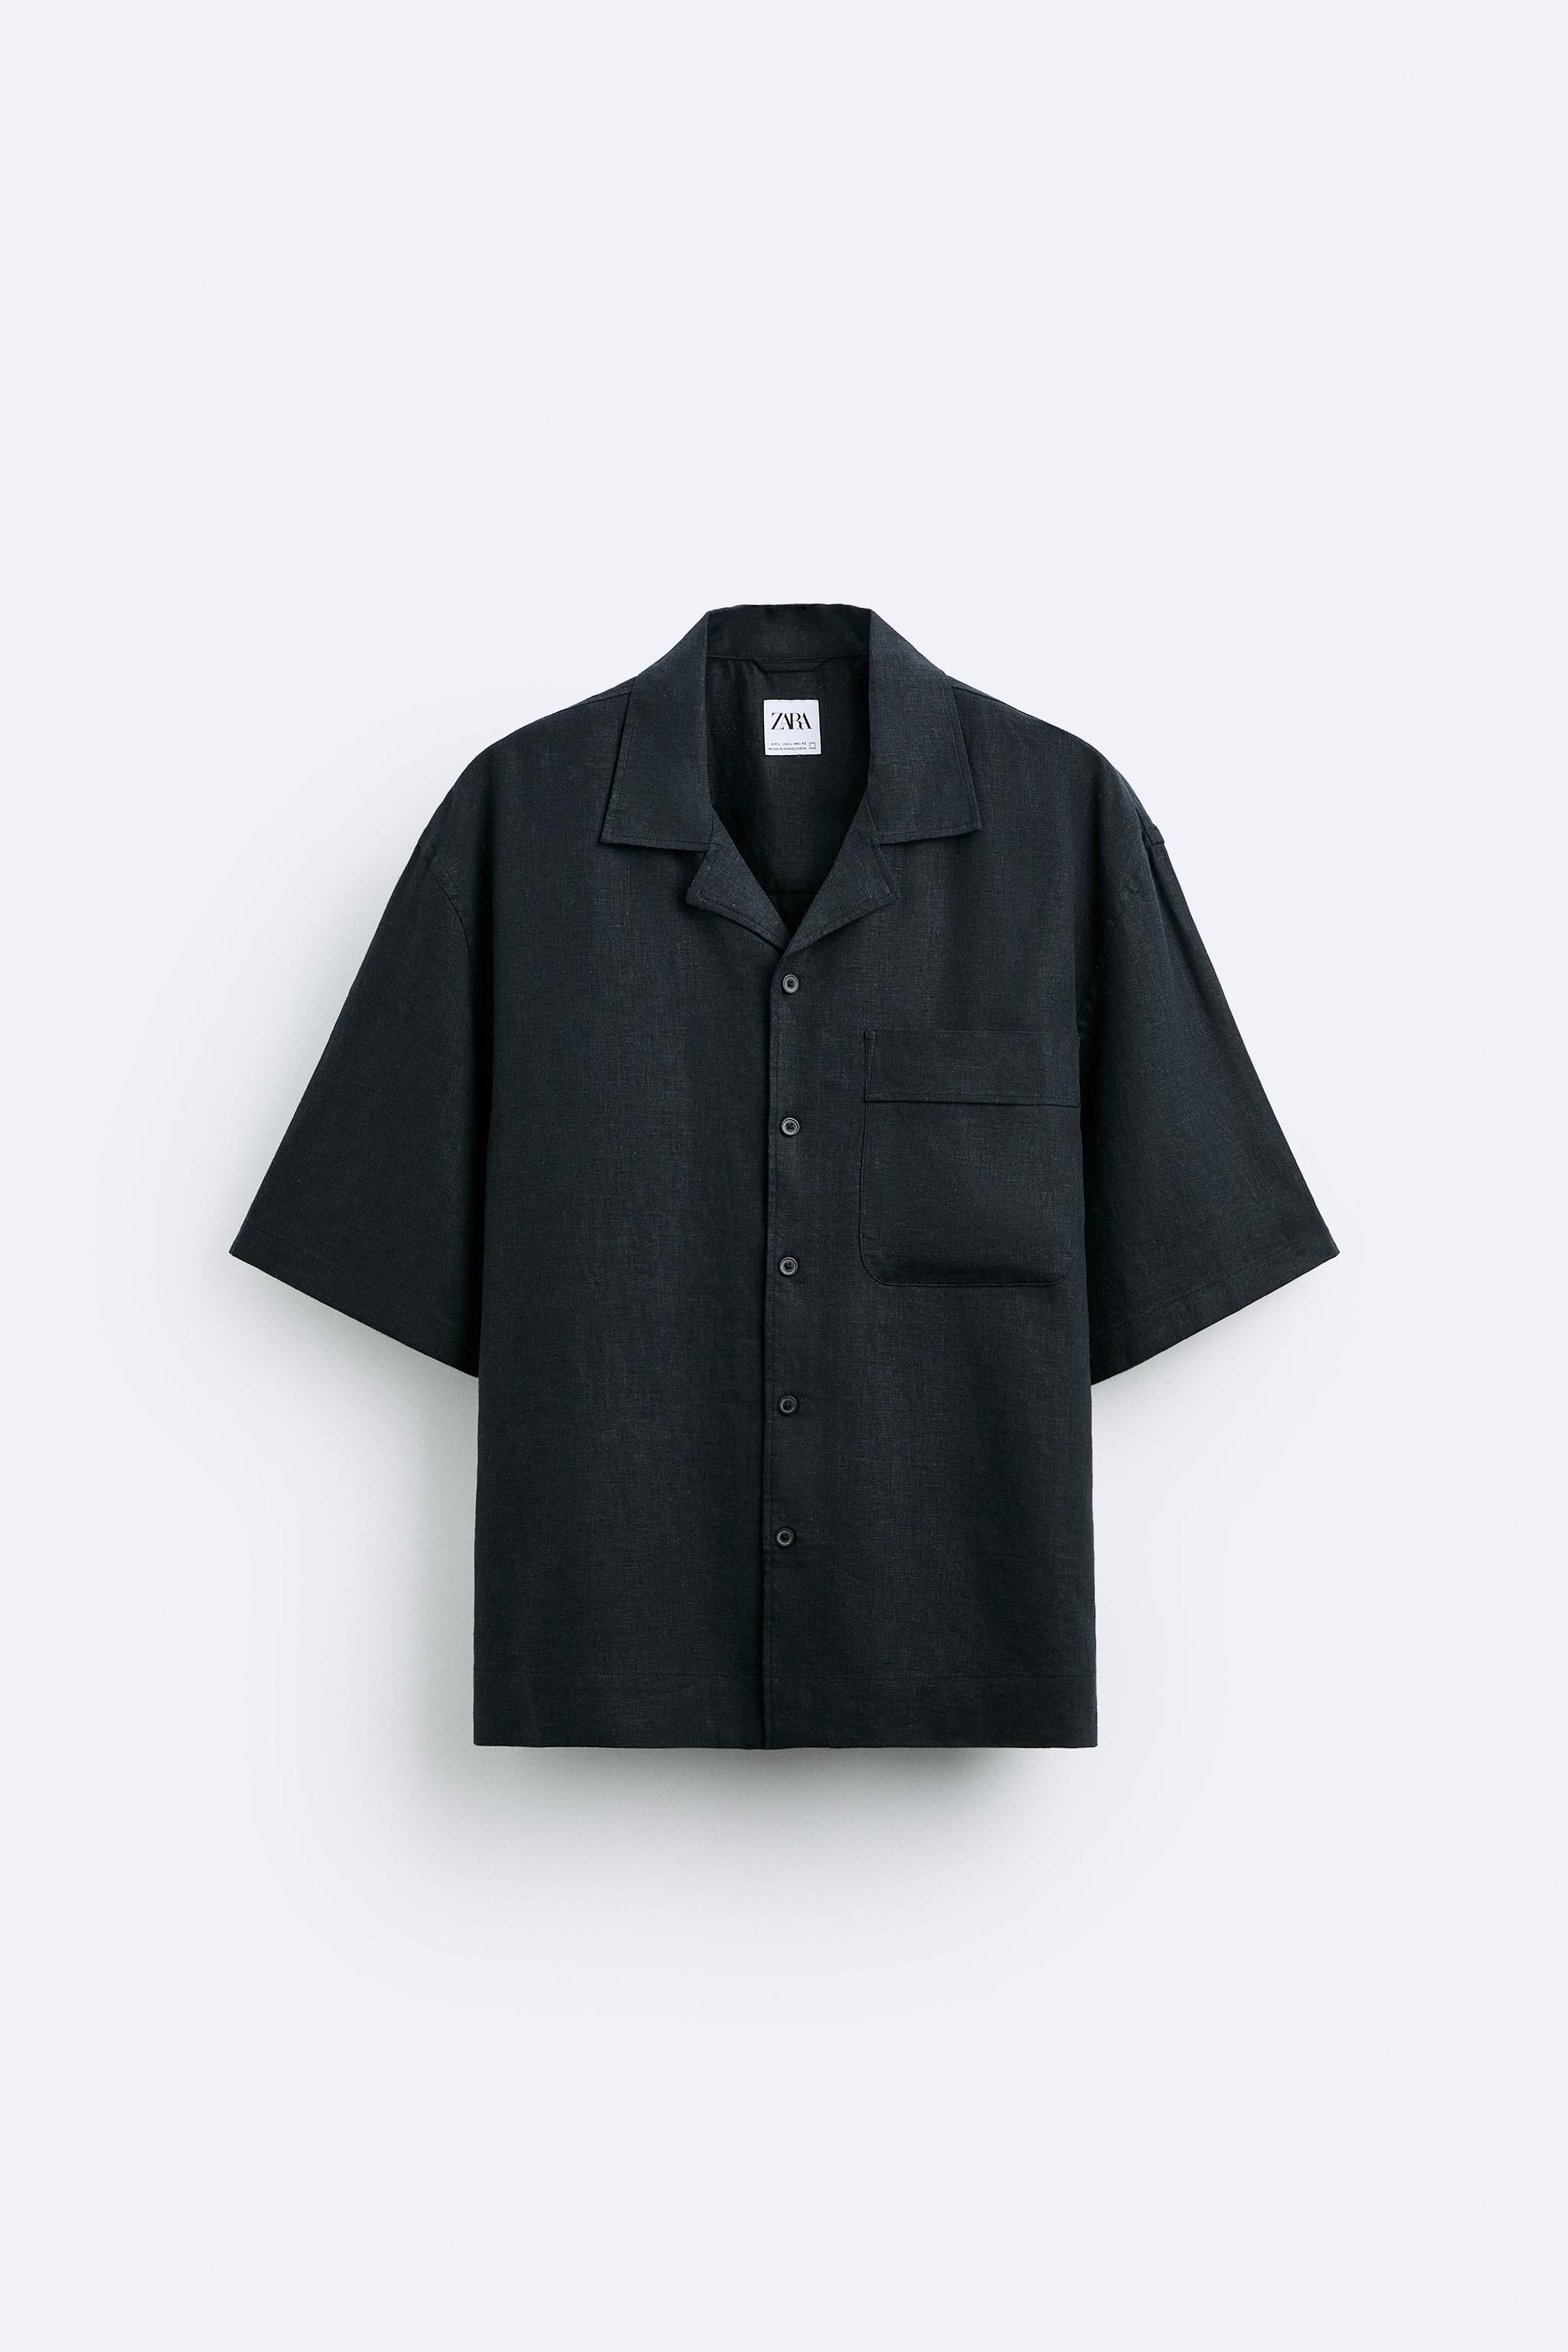 цена Рубашка Zara Viscose/linen Blend, черный